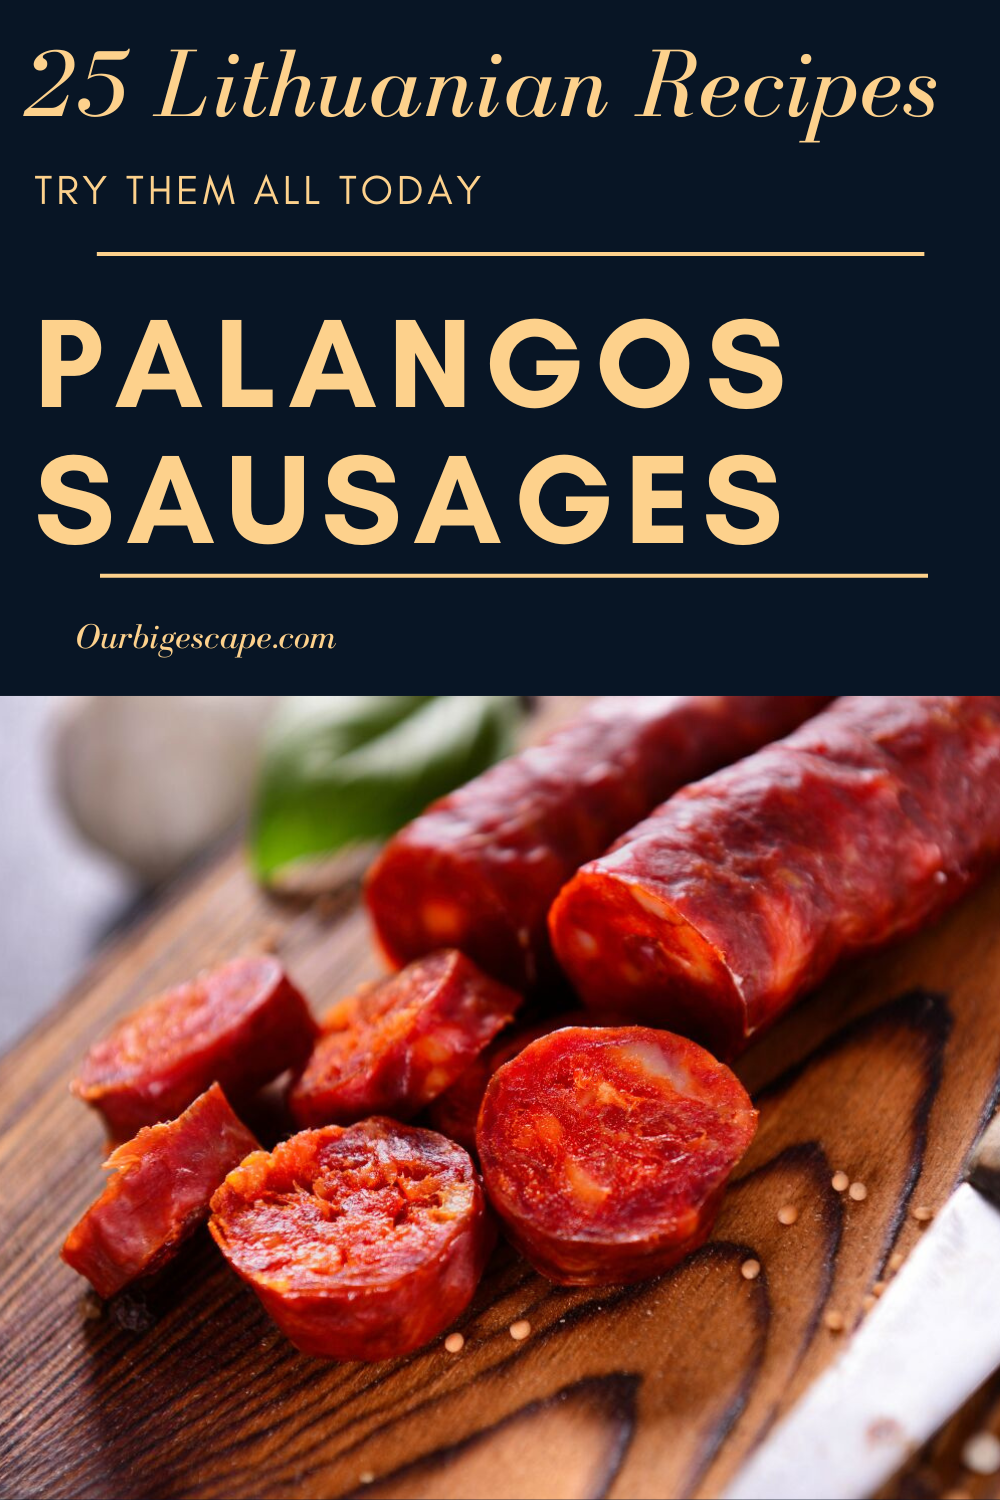 Lithuanian Homemade Palangos Sausages